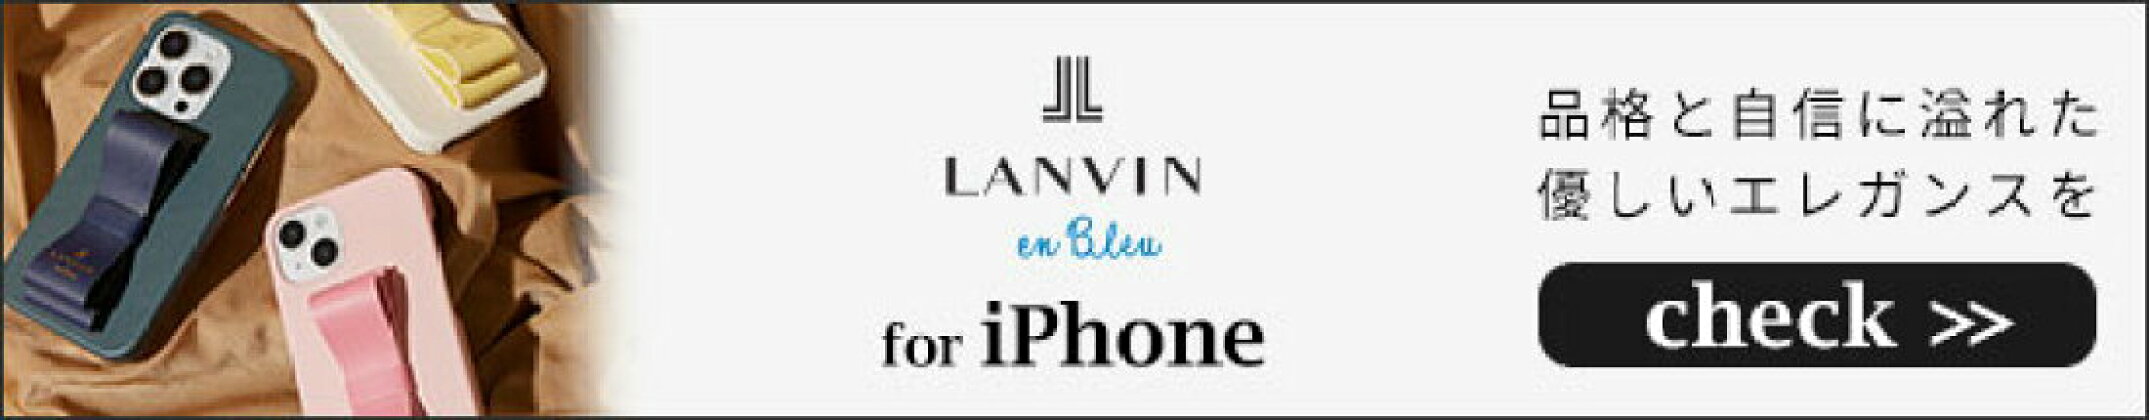 LANVIN en Bleu ランバンオンブルー iPhoneケース